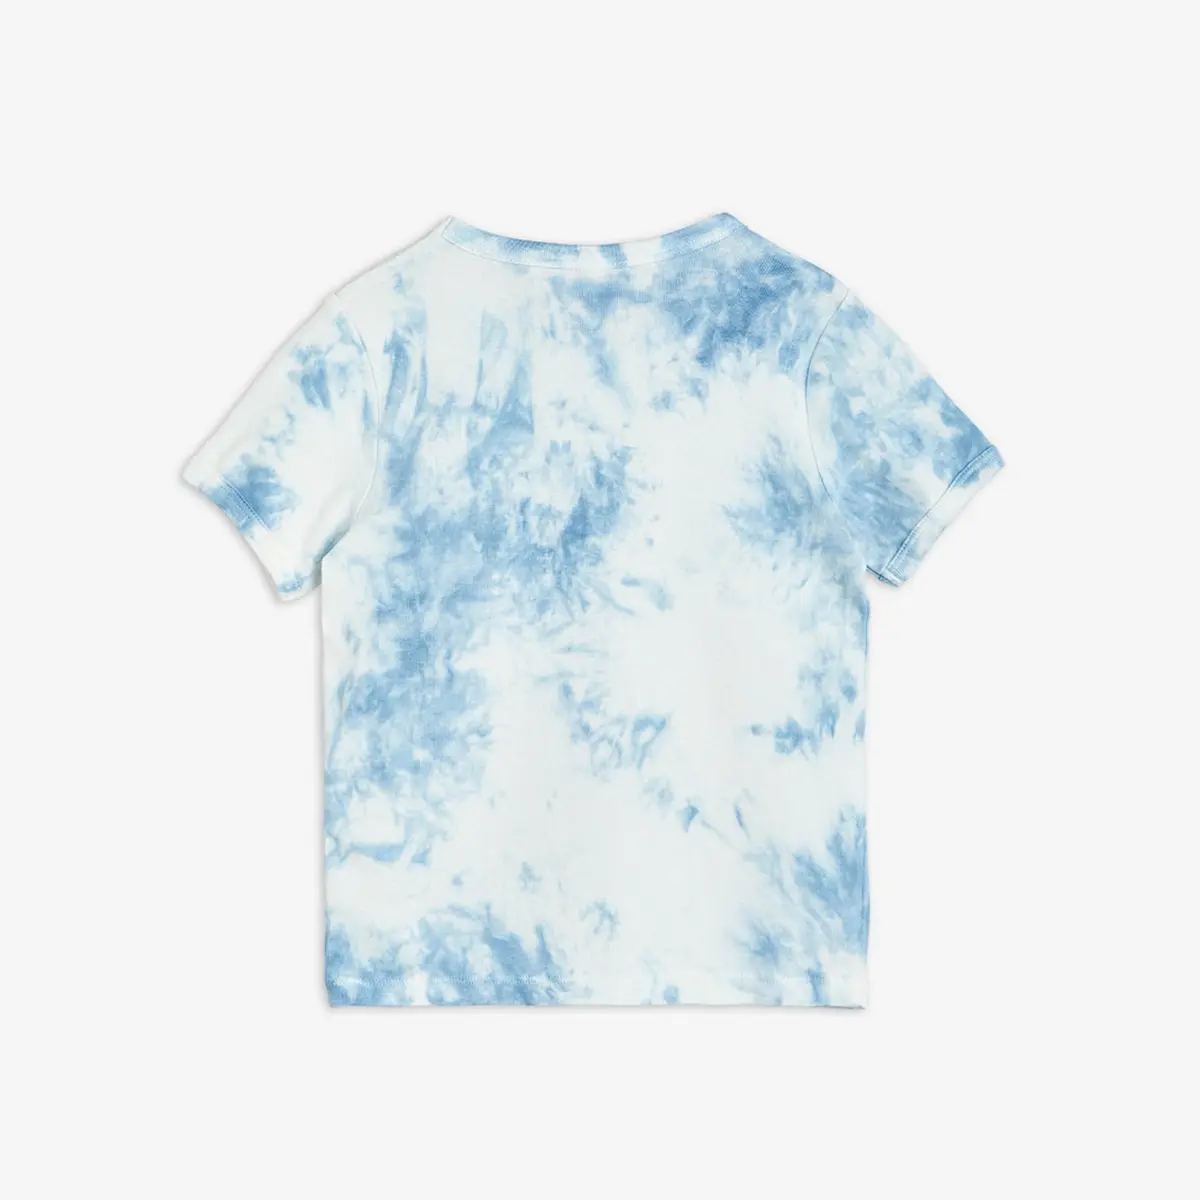 M.Rodini x Wrangler T-shirt Blue-image-1